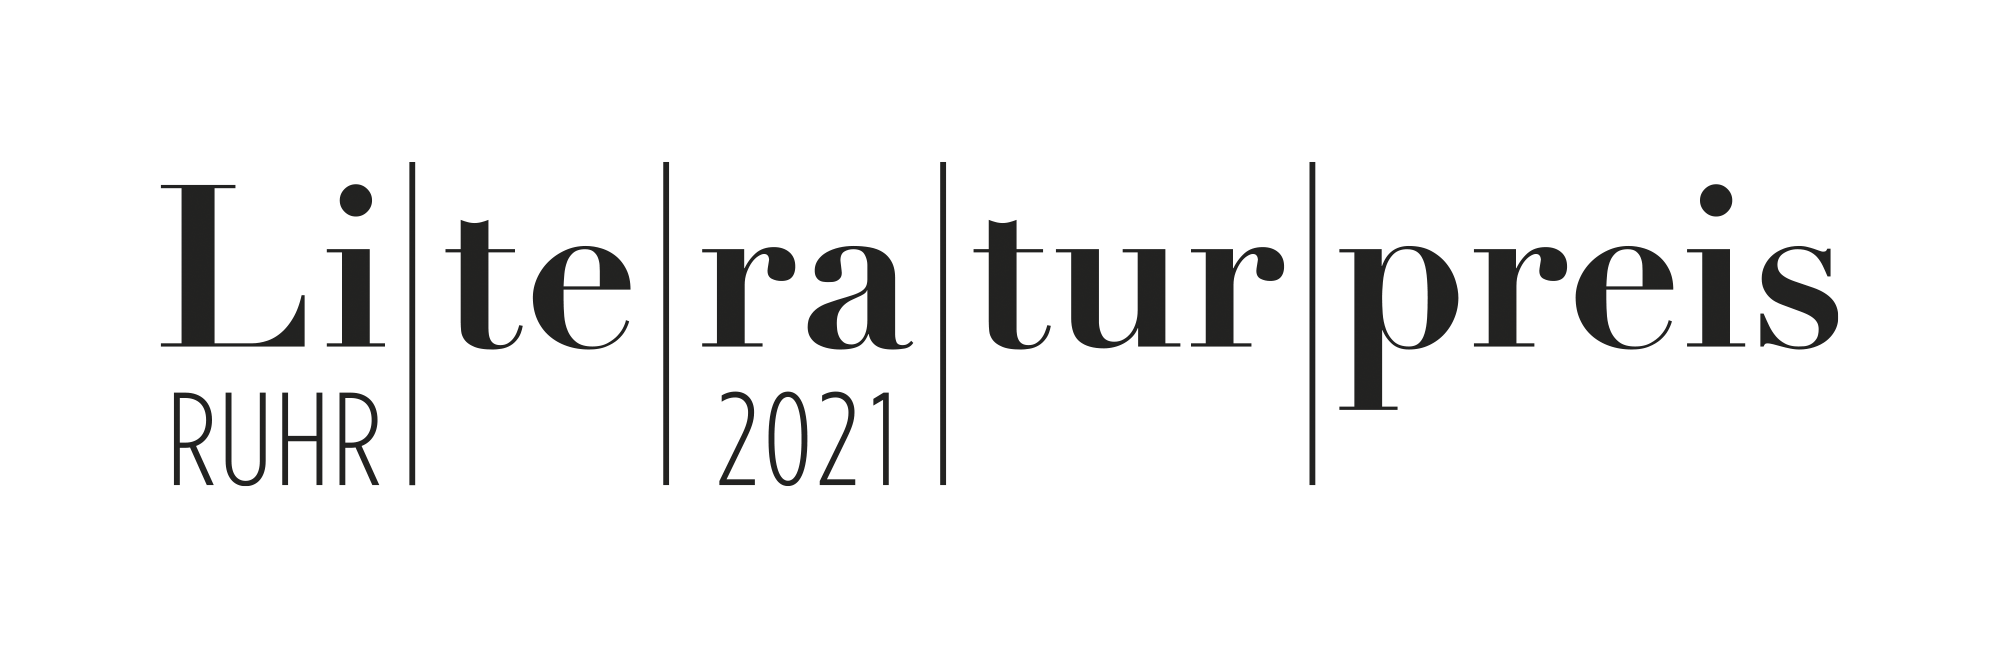 Wortmarke Literaturpreis Ruhr, 2021.